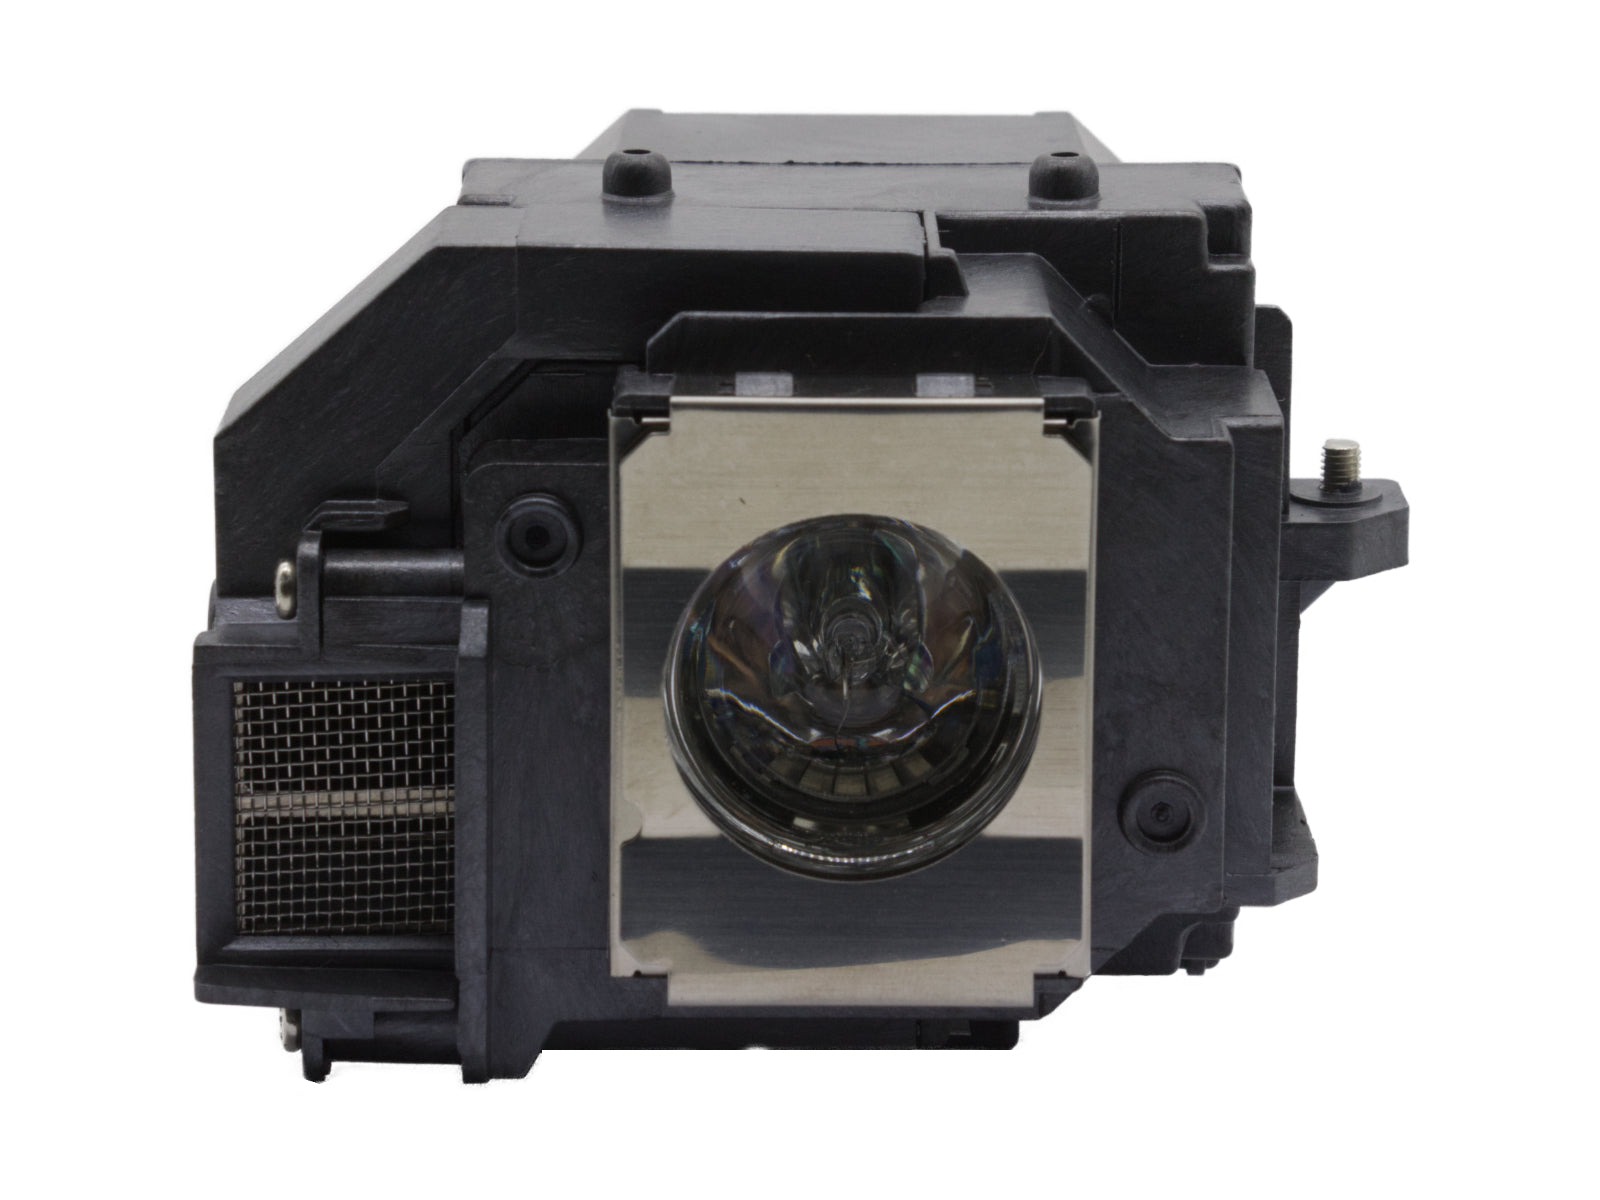 azurano Beamerlampe für EPSON ELPLP55, V13H010L55 Ersatzlampe mit Gehäuse - Bild 3